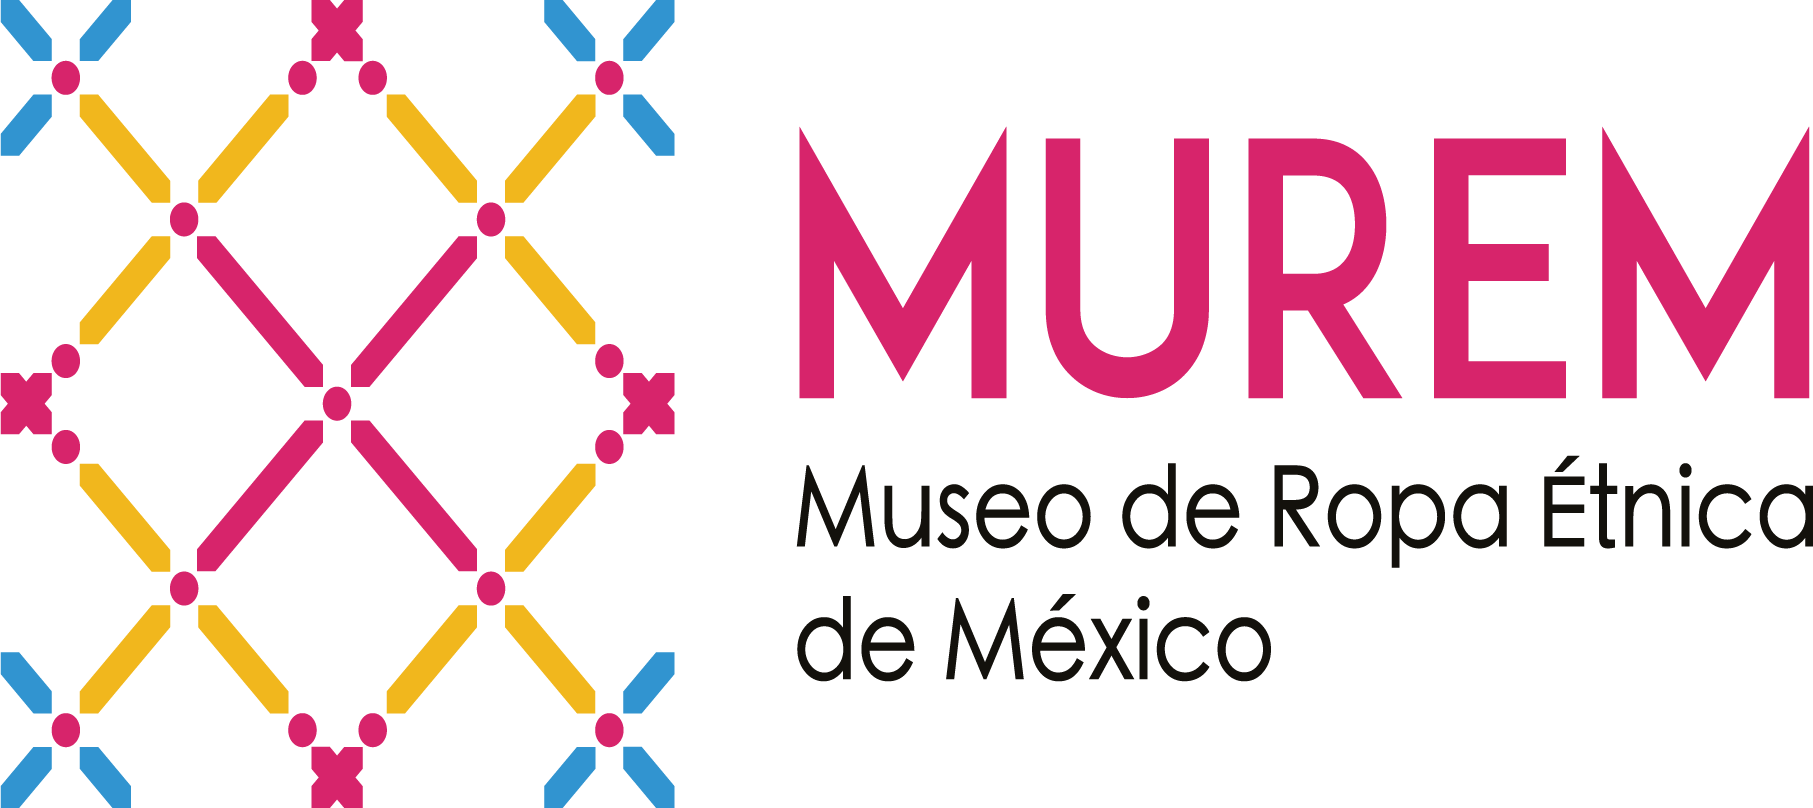 Museo de Ropa Etnica de Mexico--MUREM logo